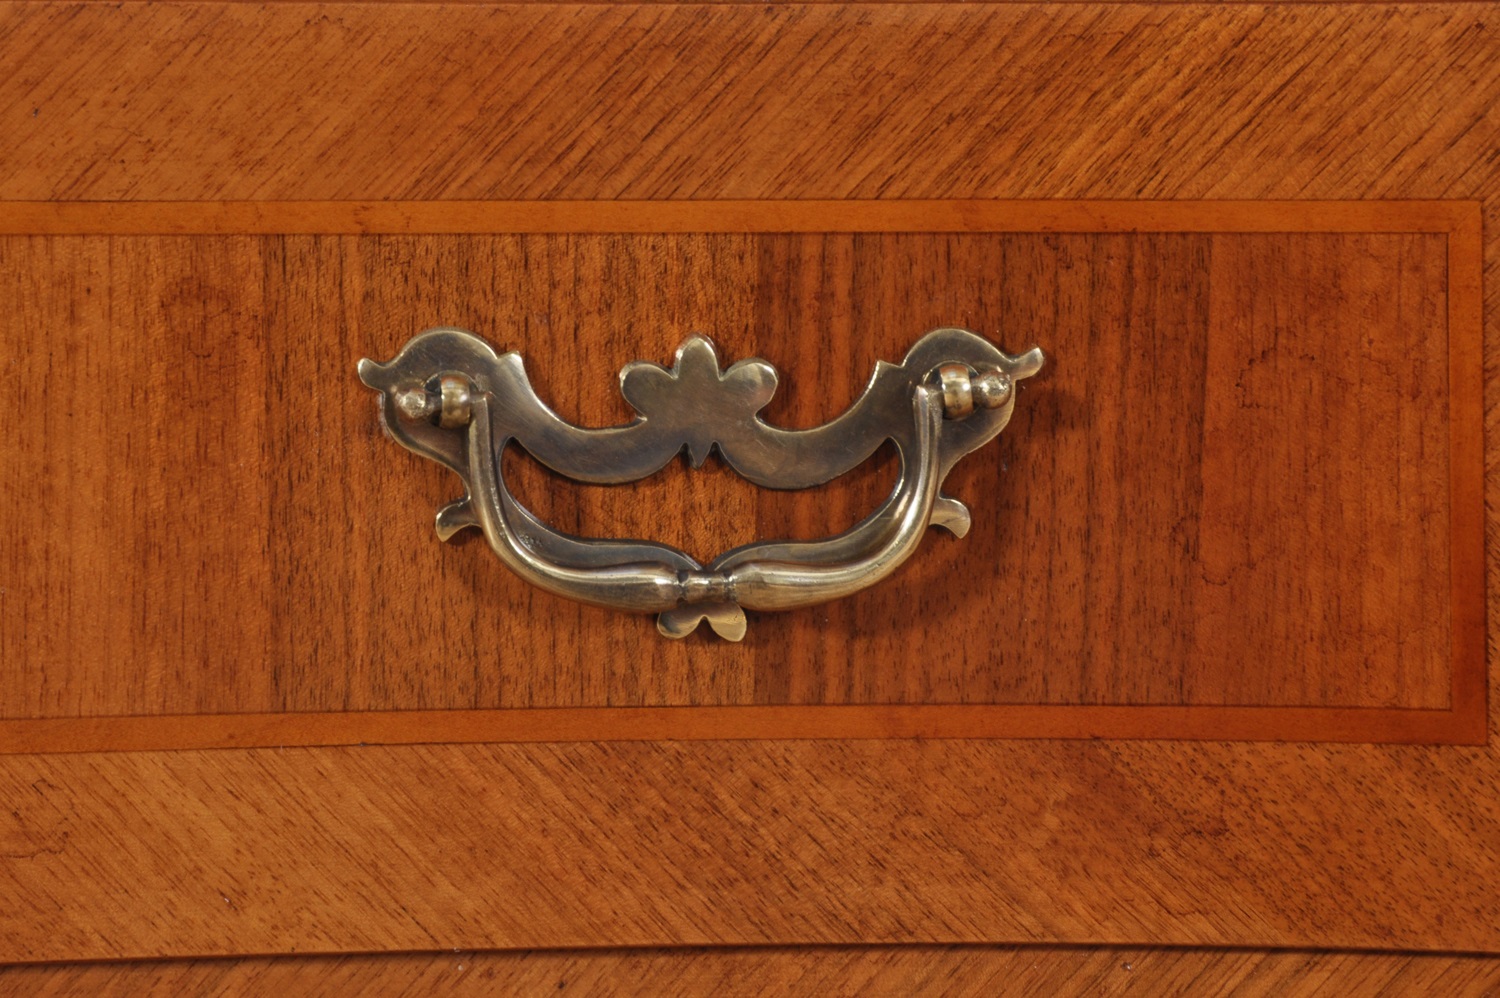 maniglie in ottone massiccio cesellate e costruite a mano con le caratteristiche dell’accessorio originale risalente al settecento accessorio di lusso made in Italy